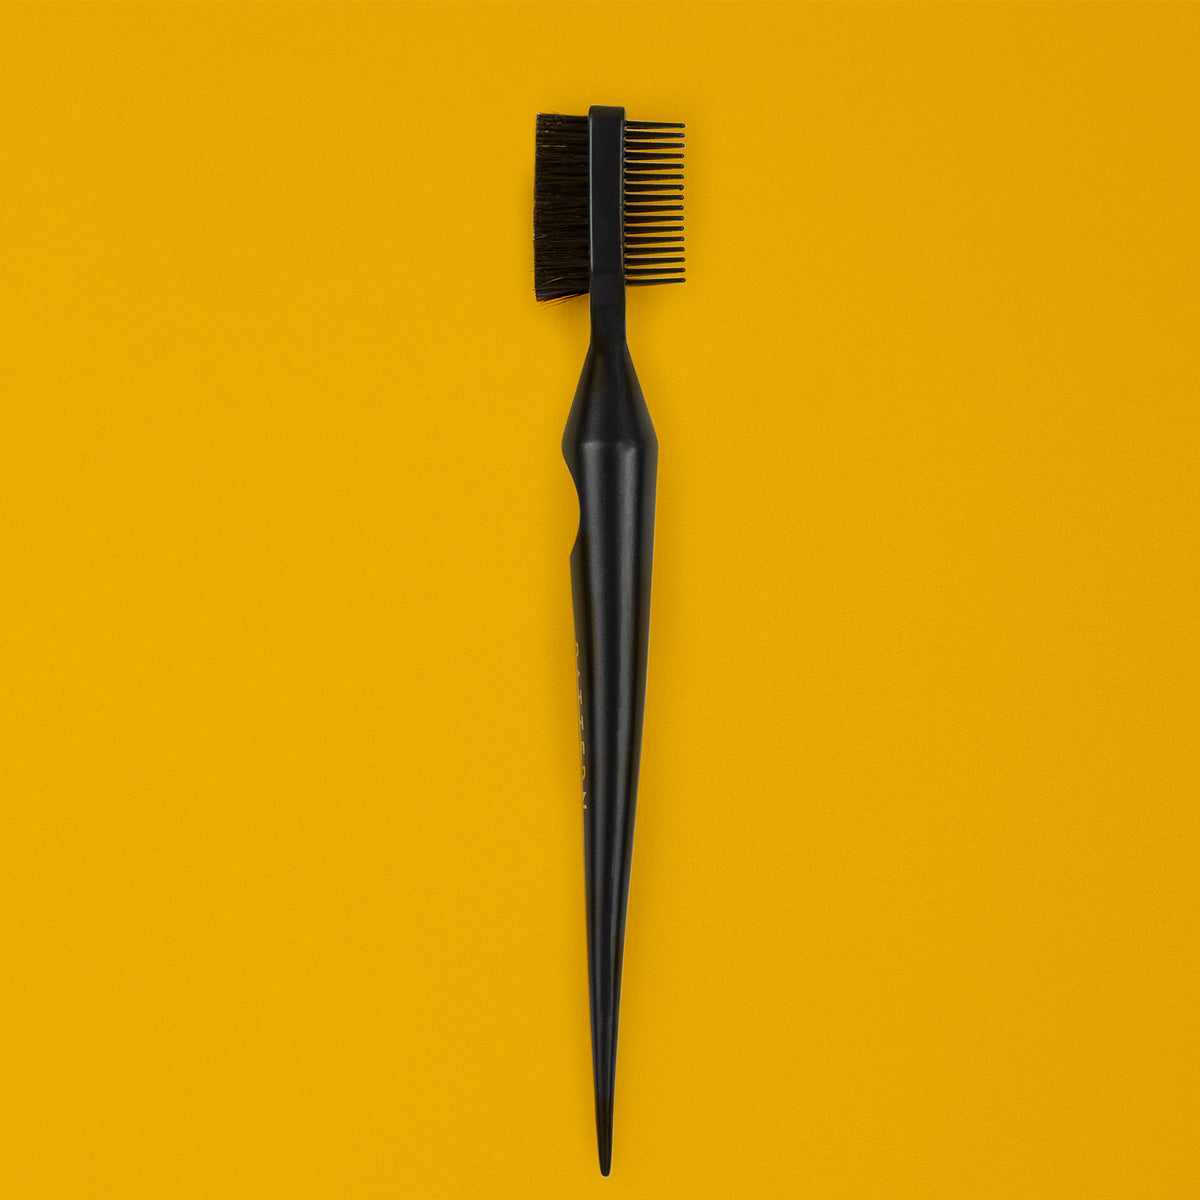 Edge, Original, 4in, & 2in Yellow Brushes - Medium Stiffness